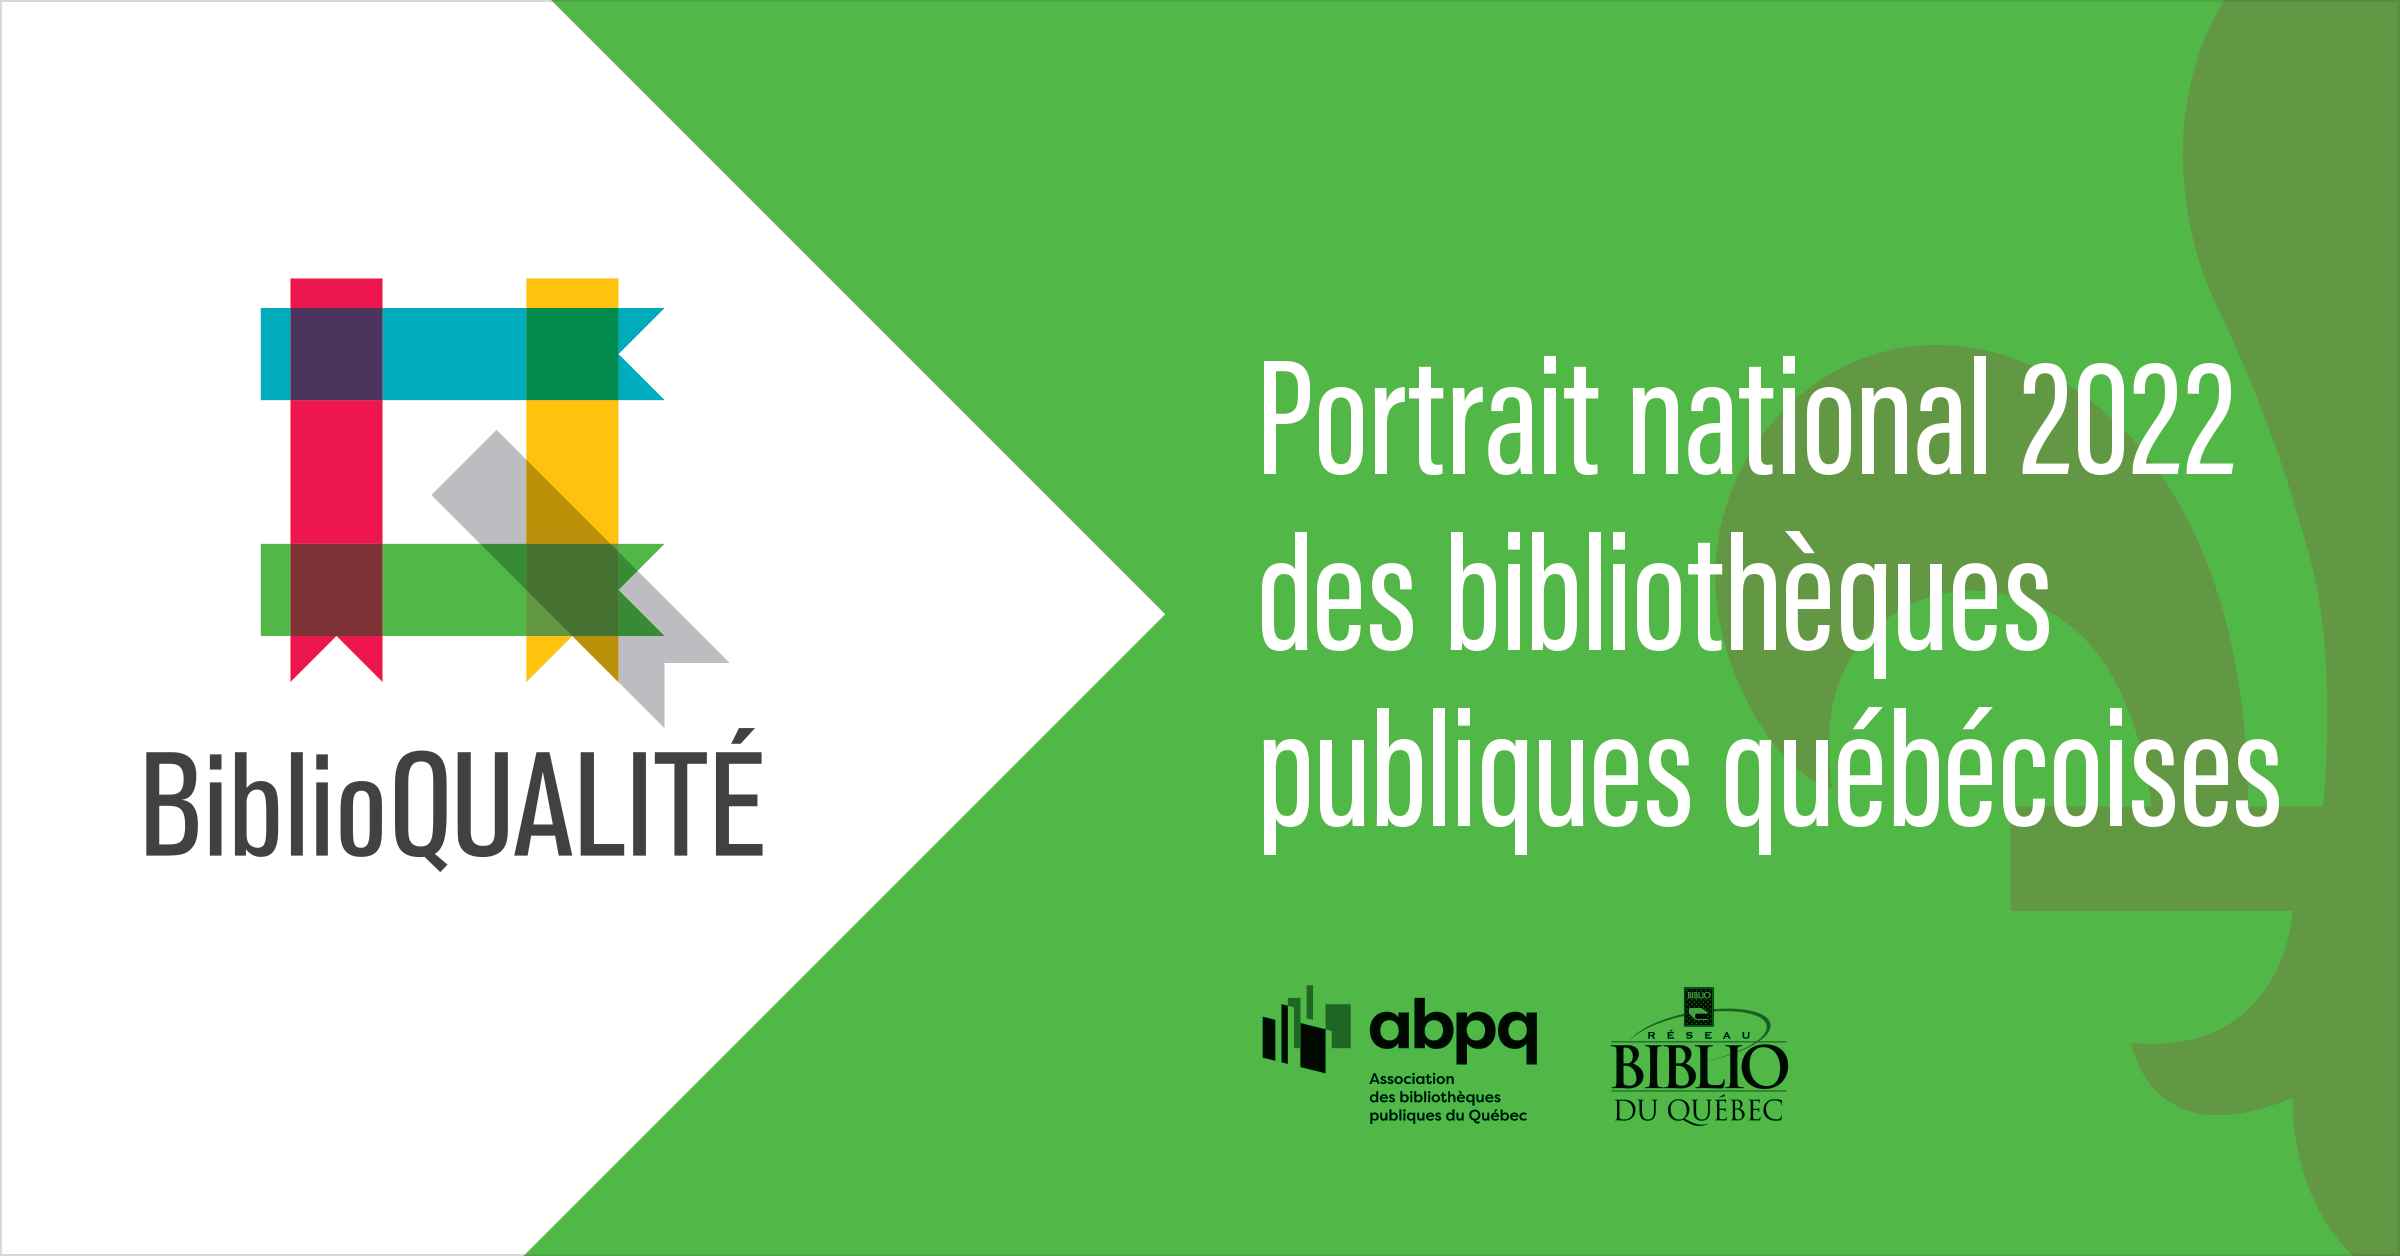 Premier portrait national des bibliothèques publiques québécoises